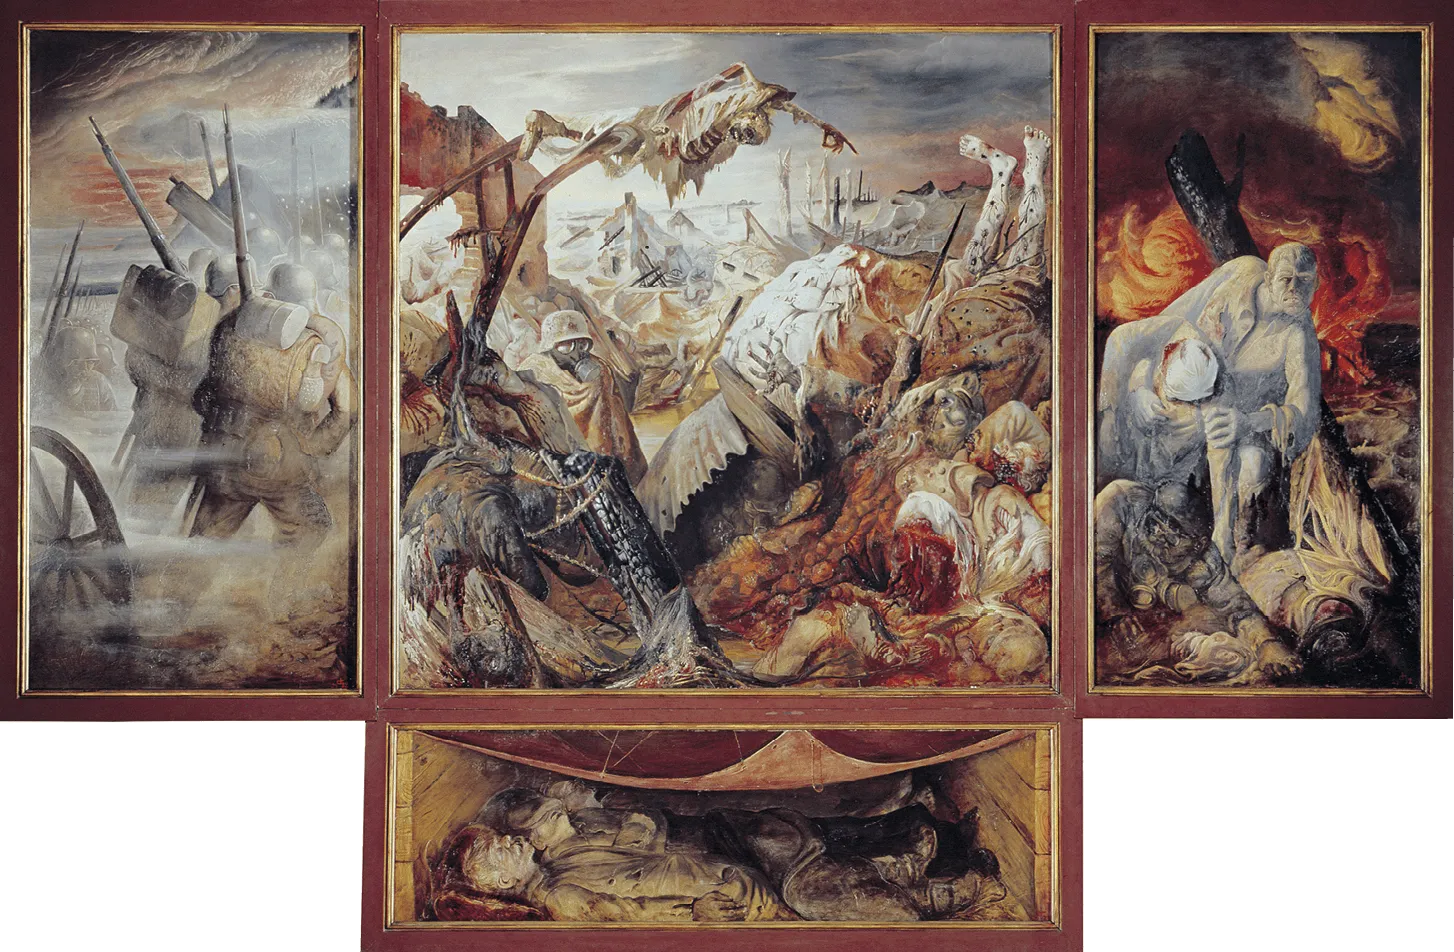 Otto Dix (1891-1969), La Guerre, 1932, tempera sur panneaux de bois, 4,68 × 2,04 m (Galerie Neue Meister, Dresde).